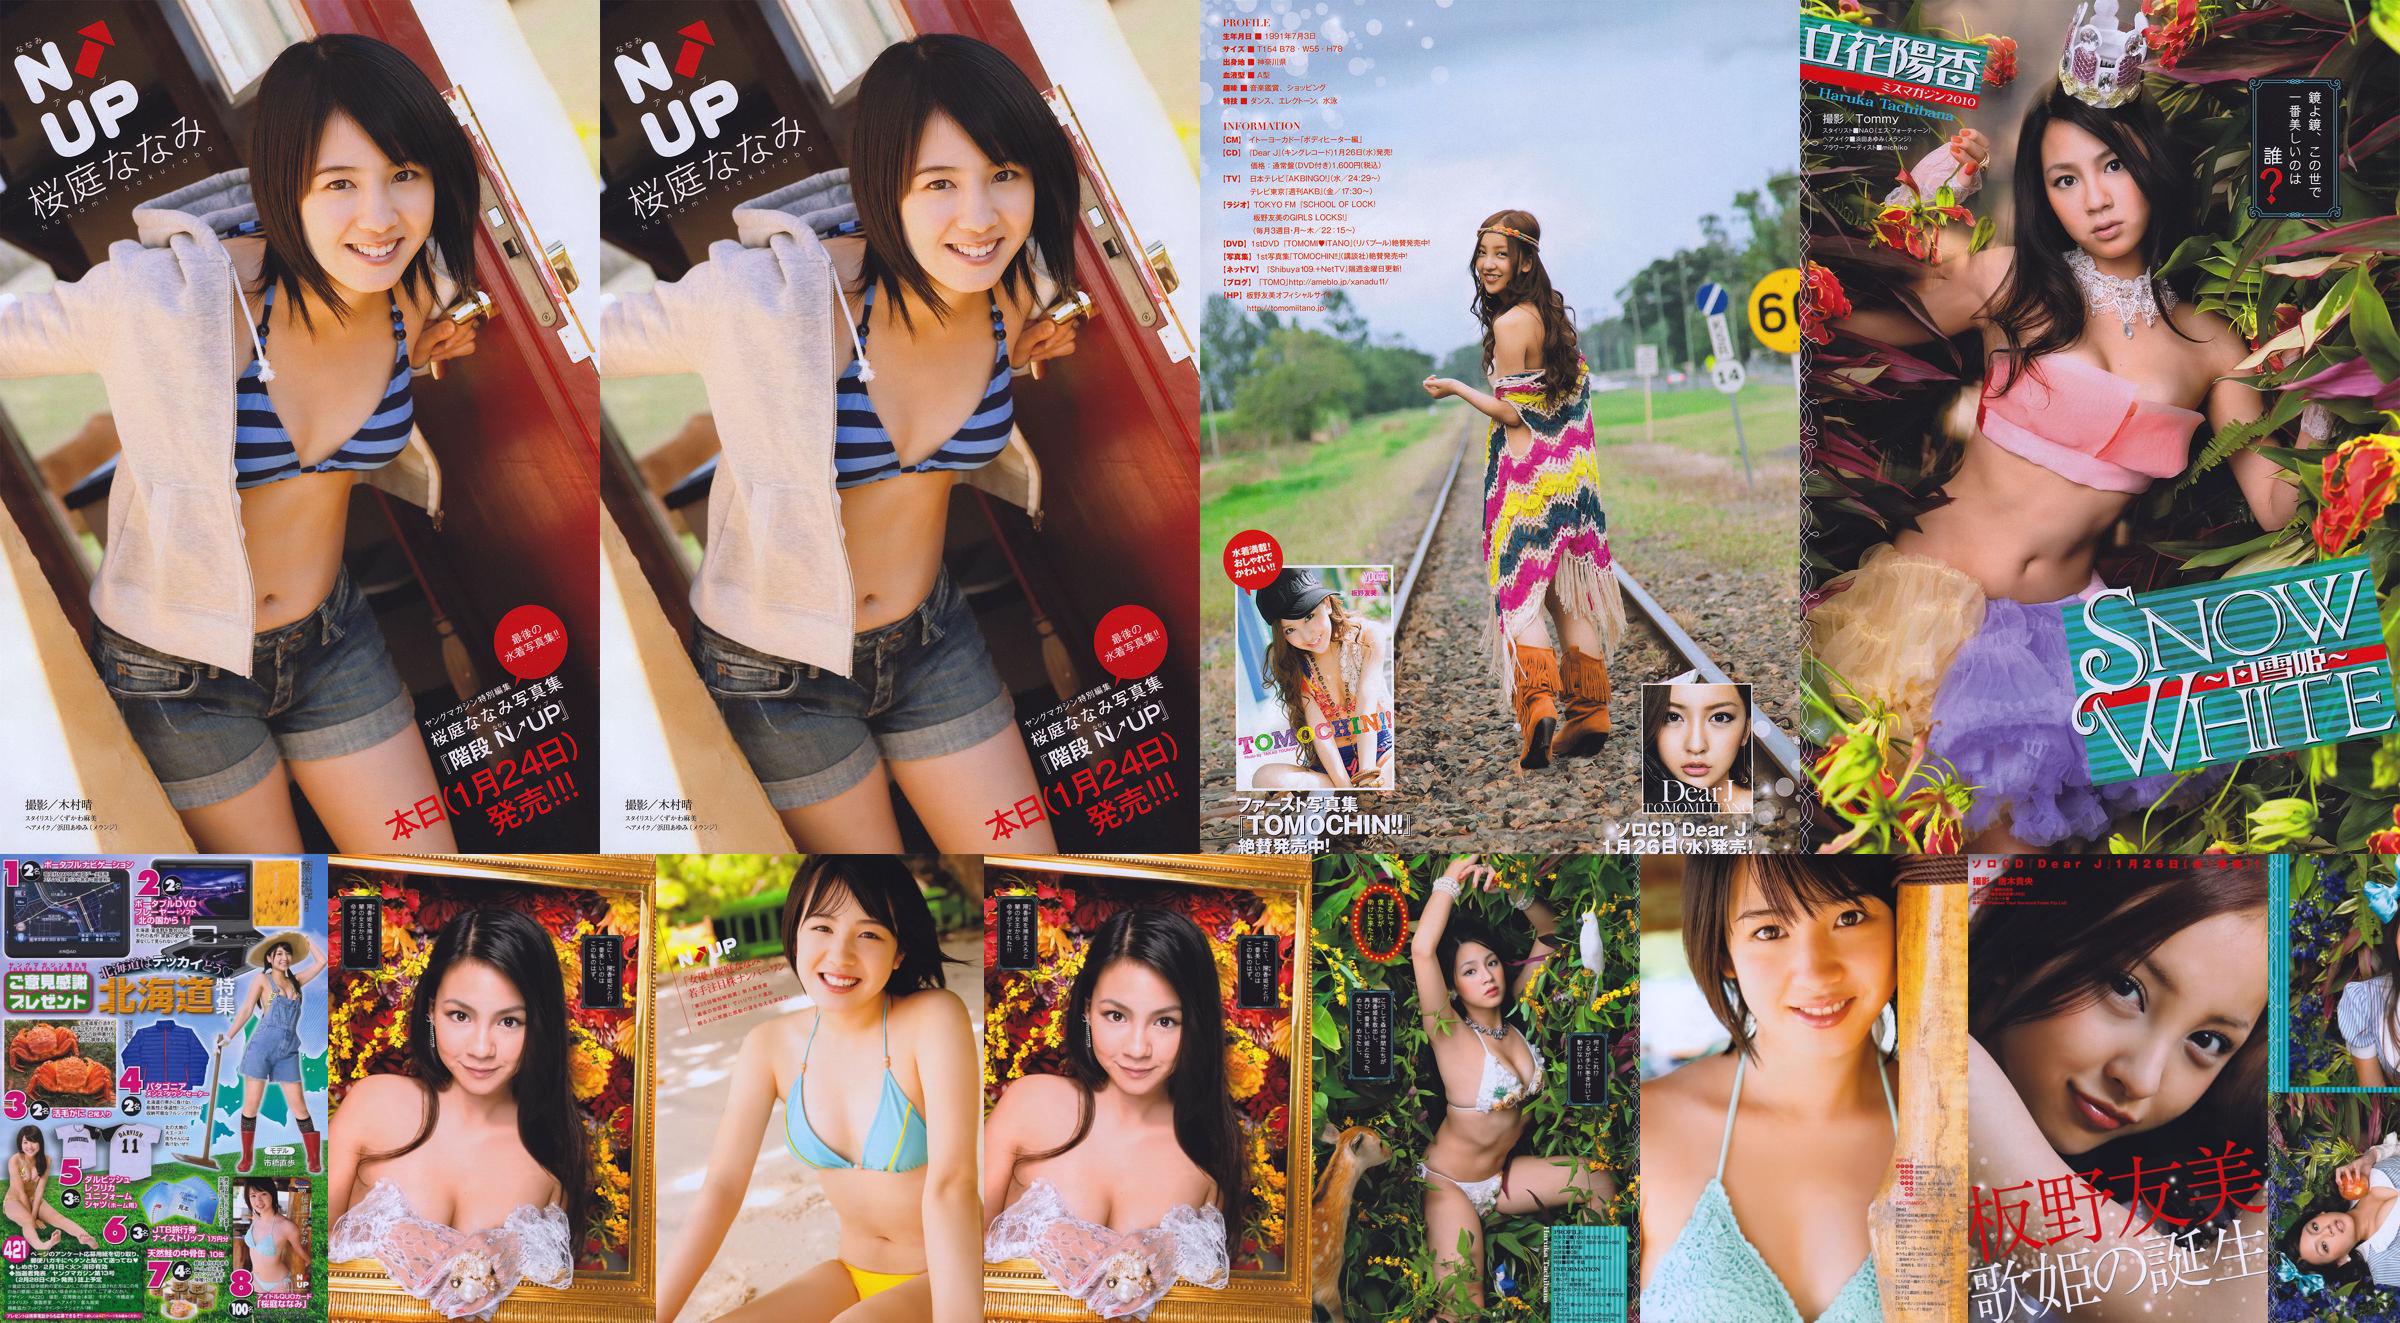 [Revista joven] Nanami Sakuraba 2011 No 08 Fotografía No.46a56b Página 2